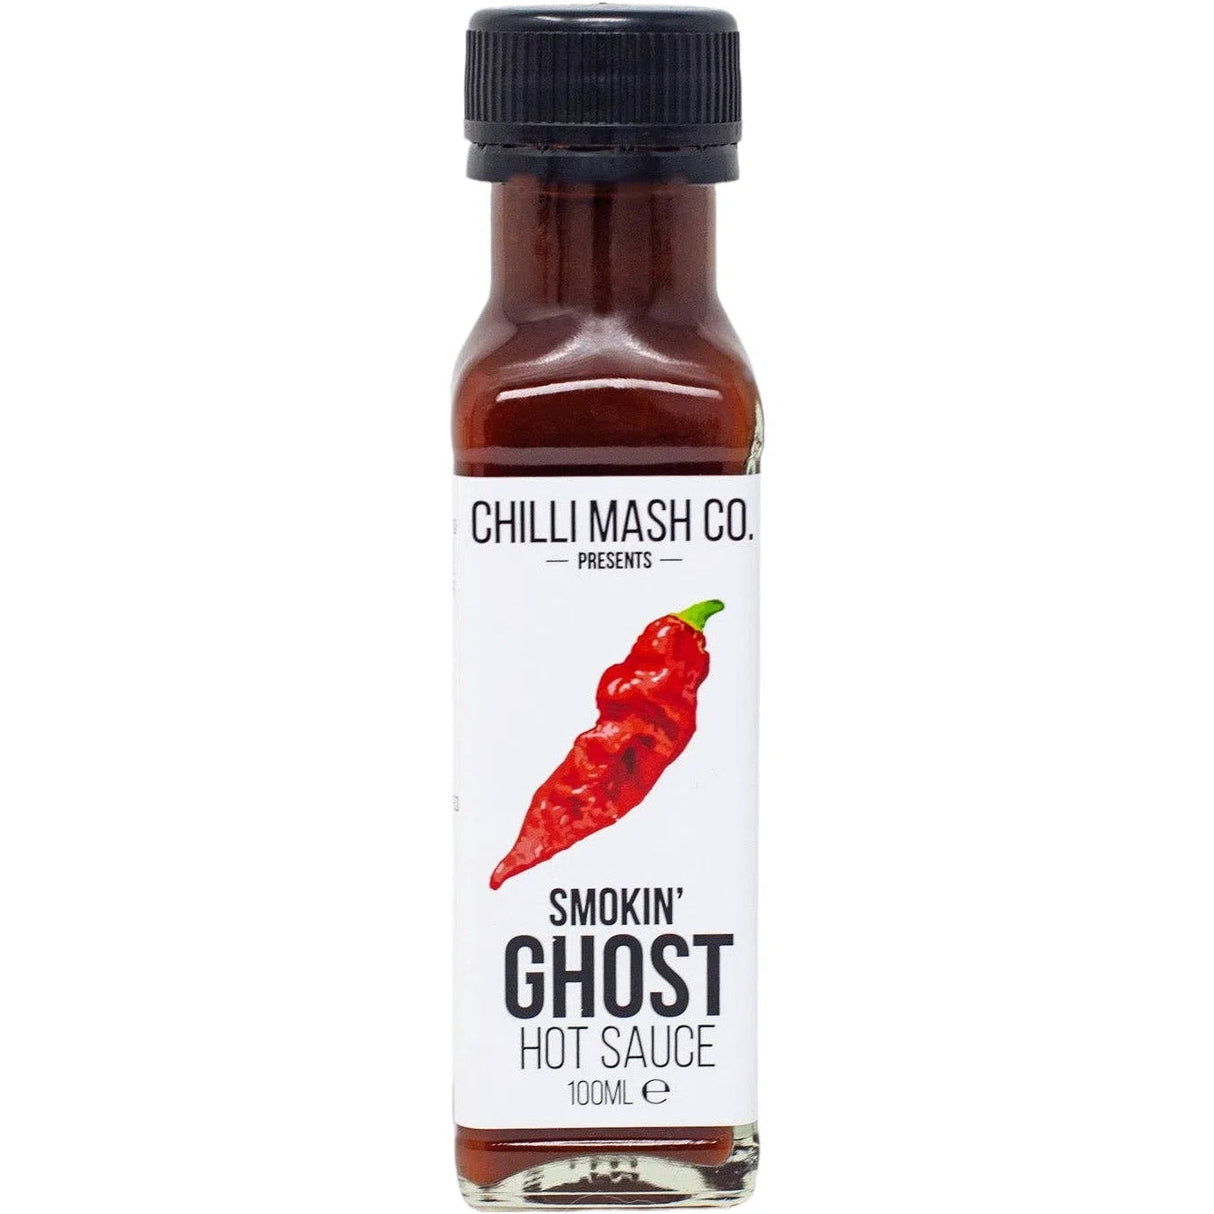 Chilli Mash Co - Smokin' Ghost Hot Sauce